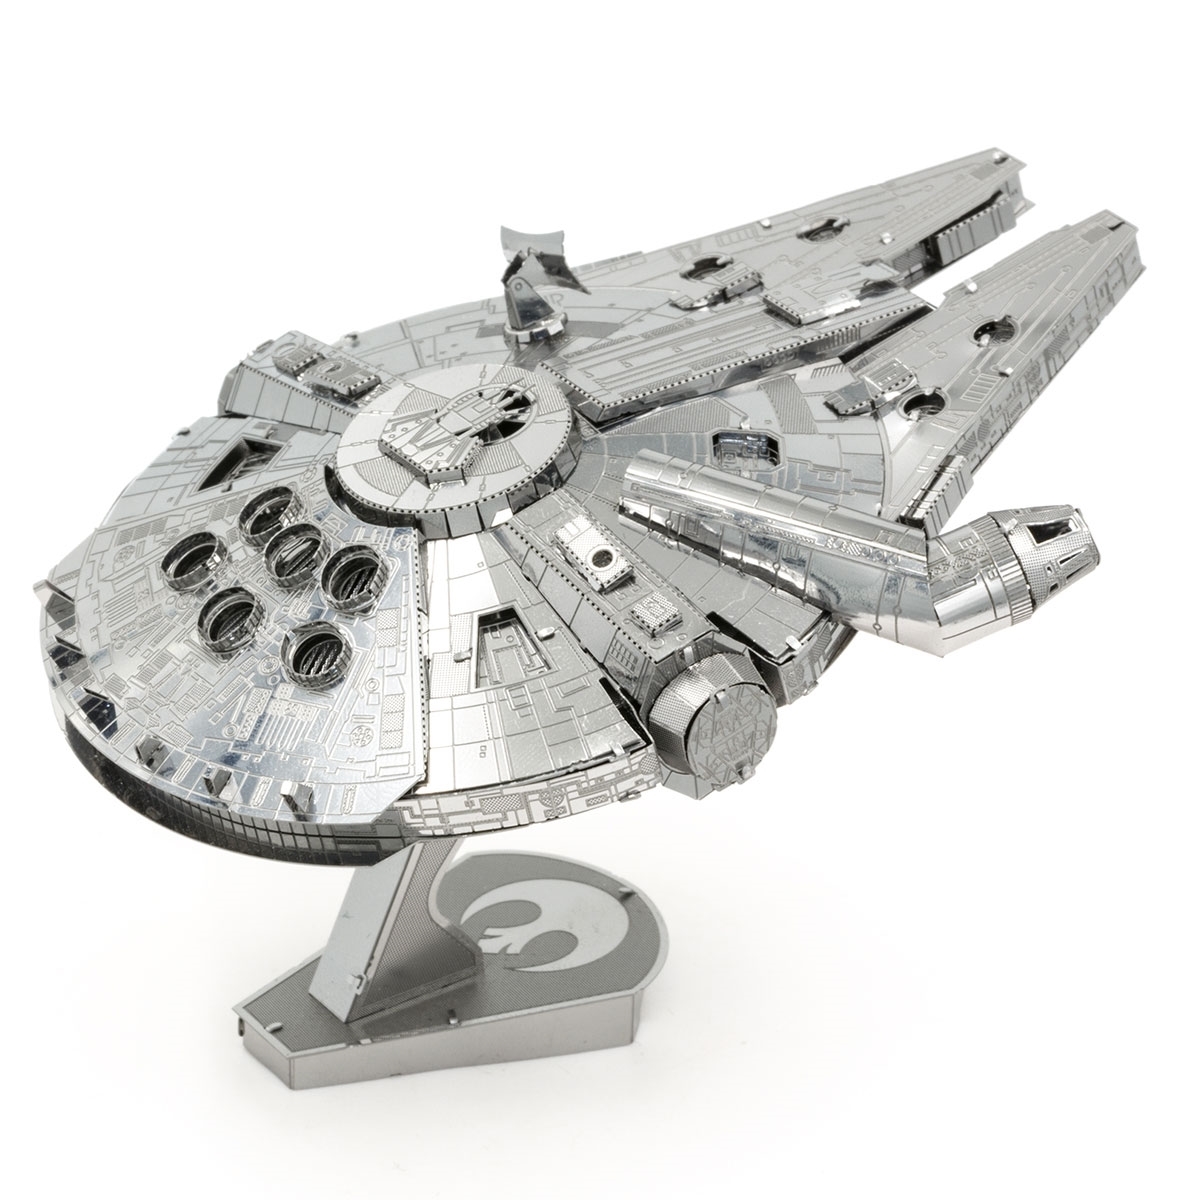 Metal Earth Star Wars Millennium Falcon 3D Metal Model Kit 